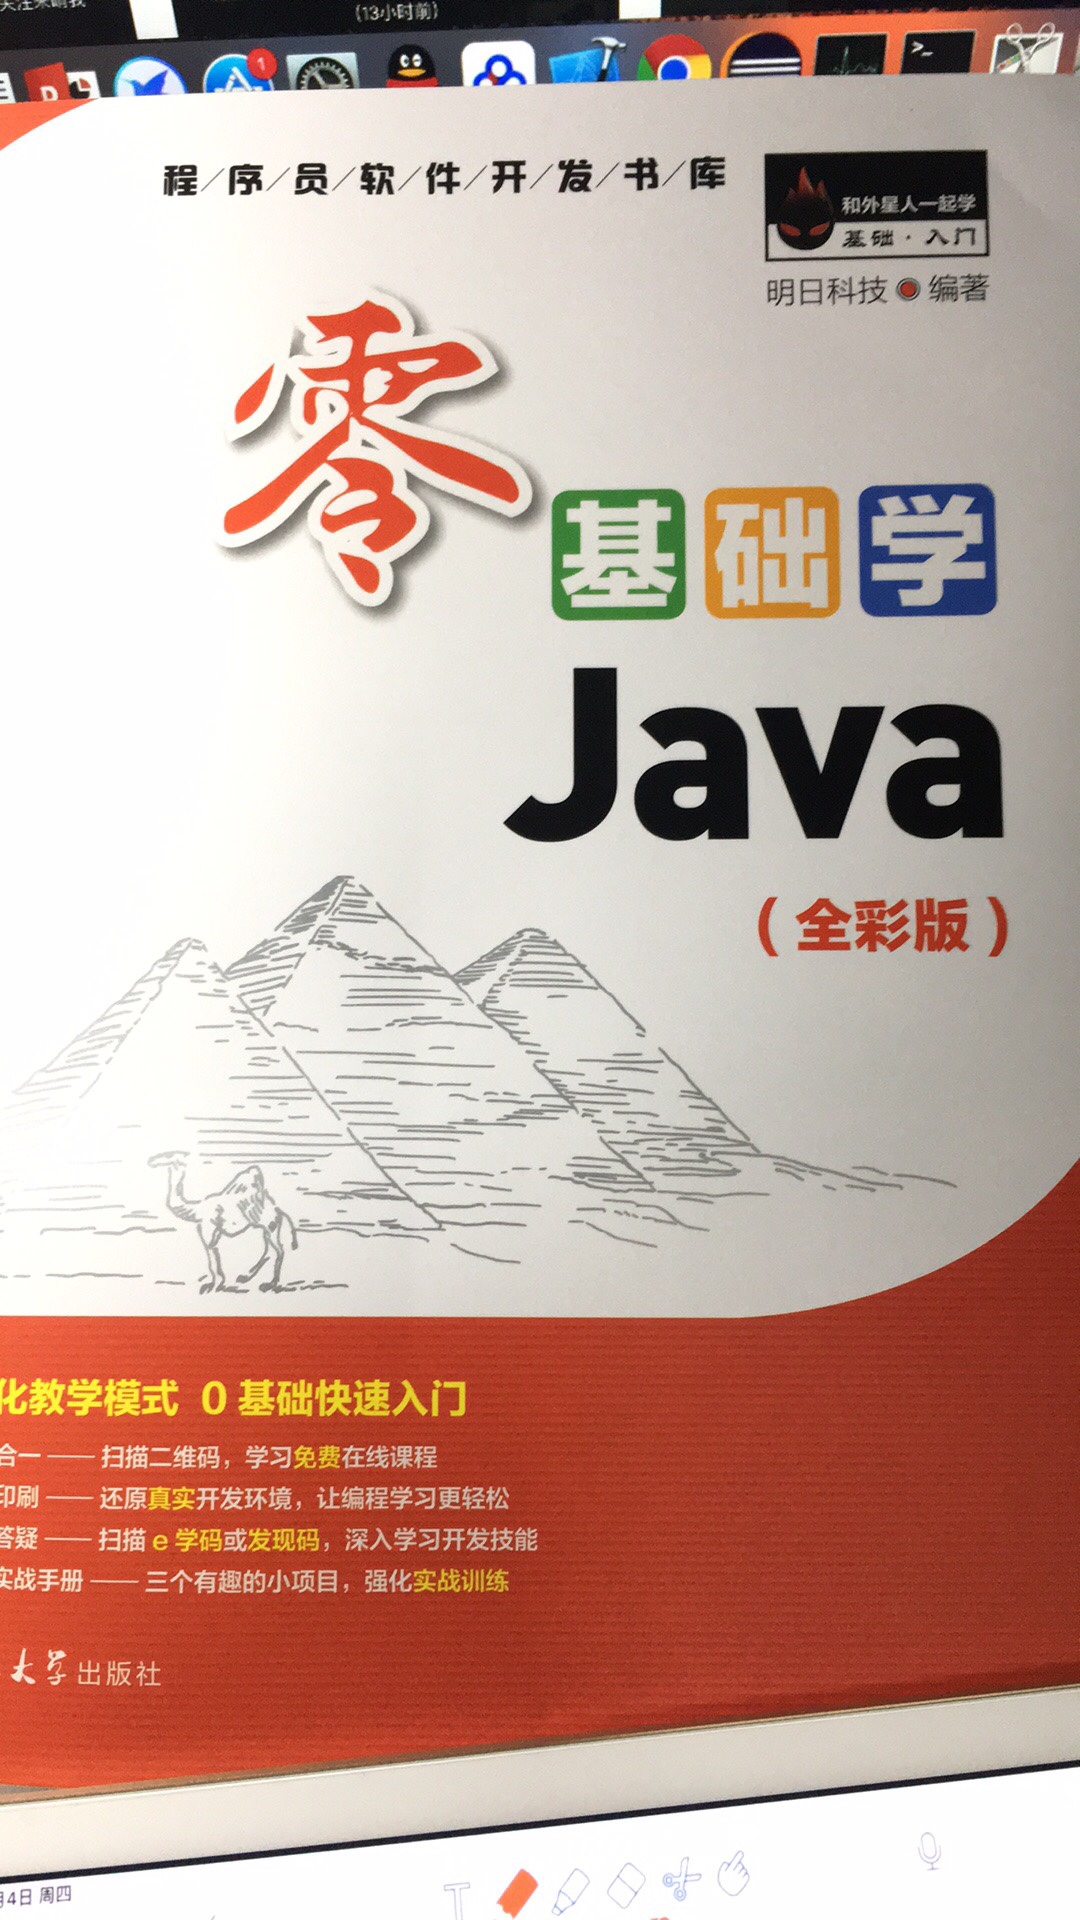 适合Java新手，基础入门，纸质是彩色的，很好。